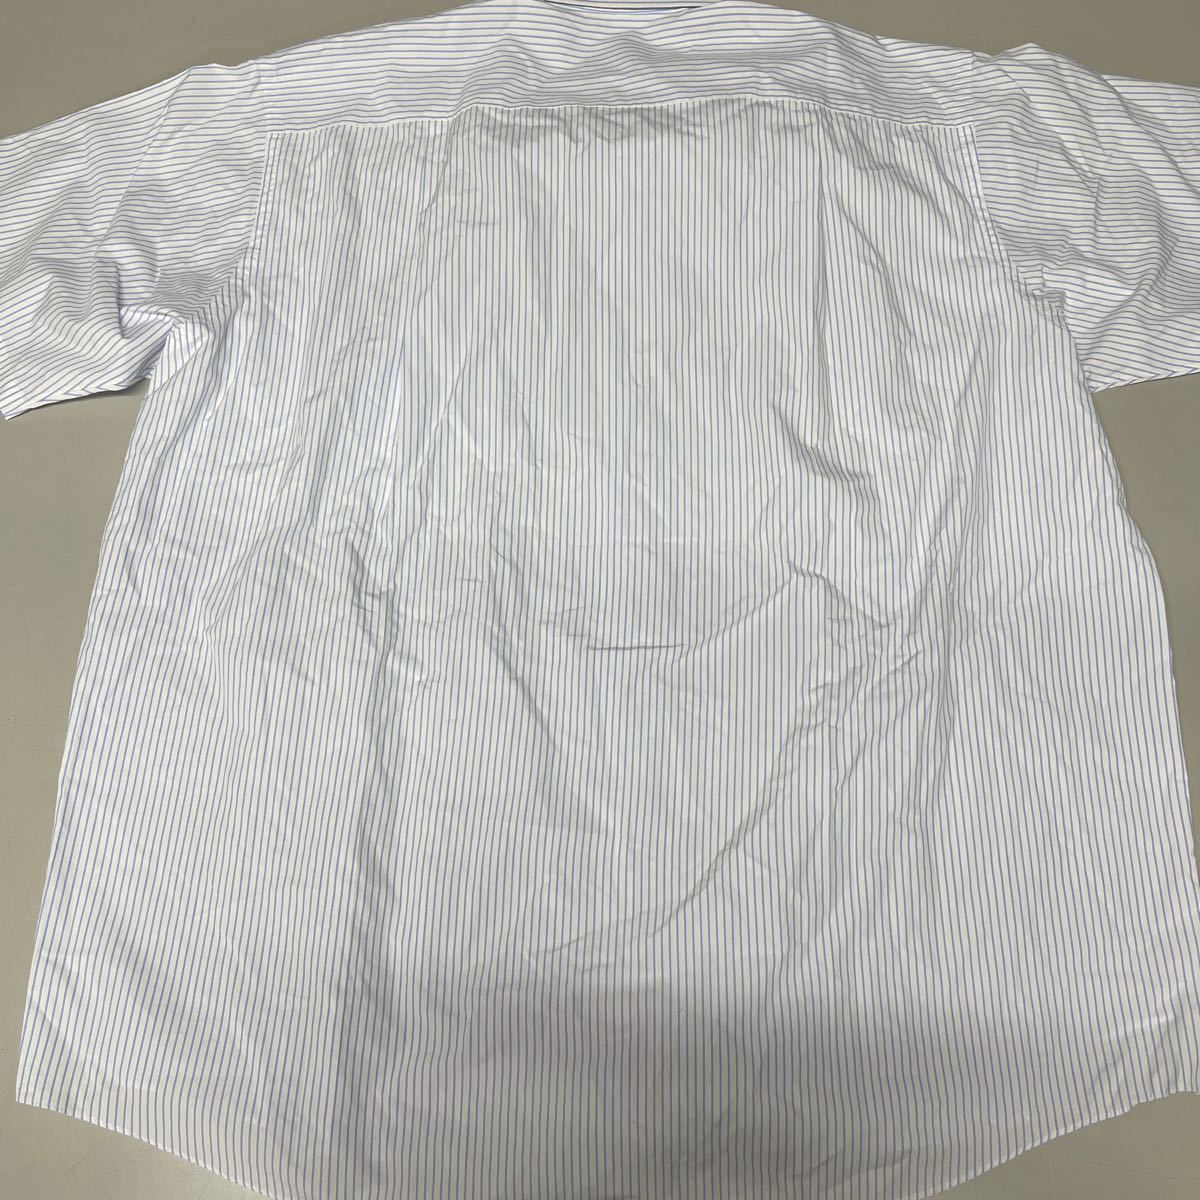 バーバリーロンドン BURBERRY LONDON 半袖シャツ ボタンダウン 大きいサイズ キングサイズ ストライプ ワイシャツ メンズ 日本製 綿100%_画像6